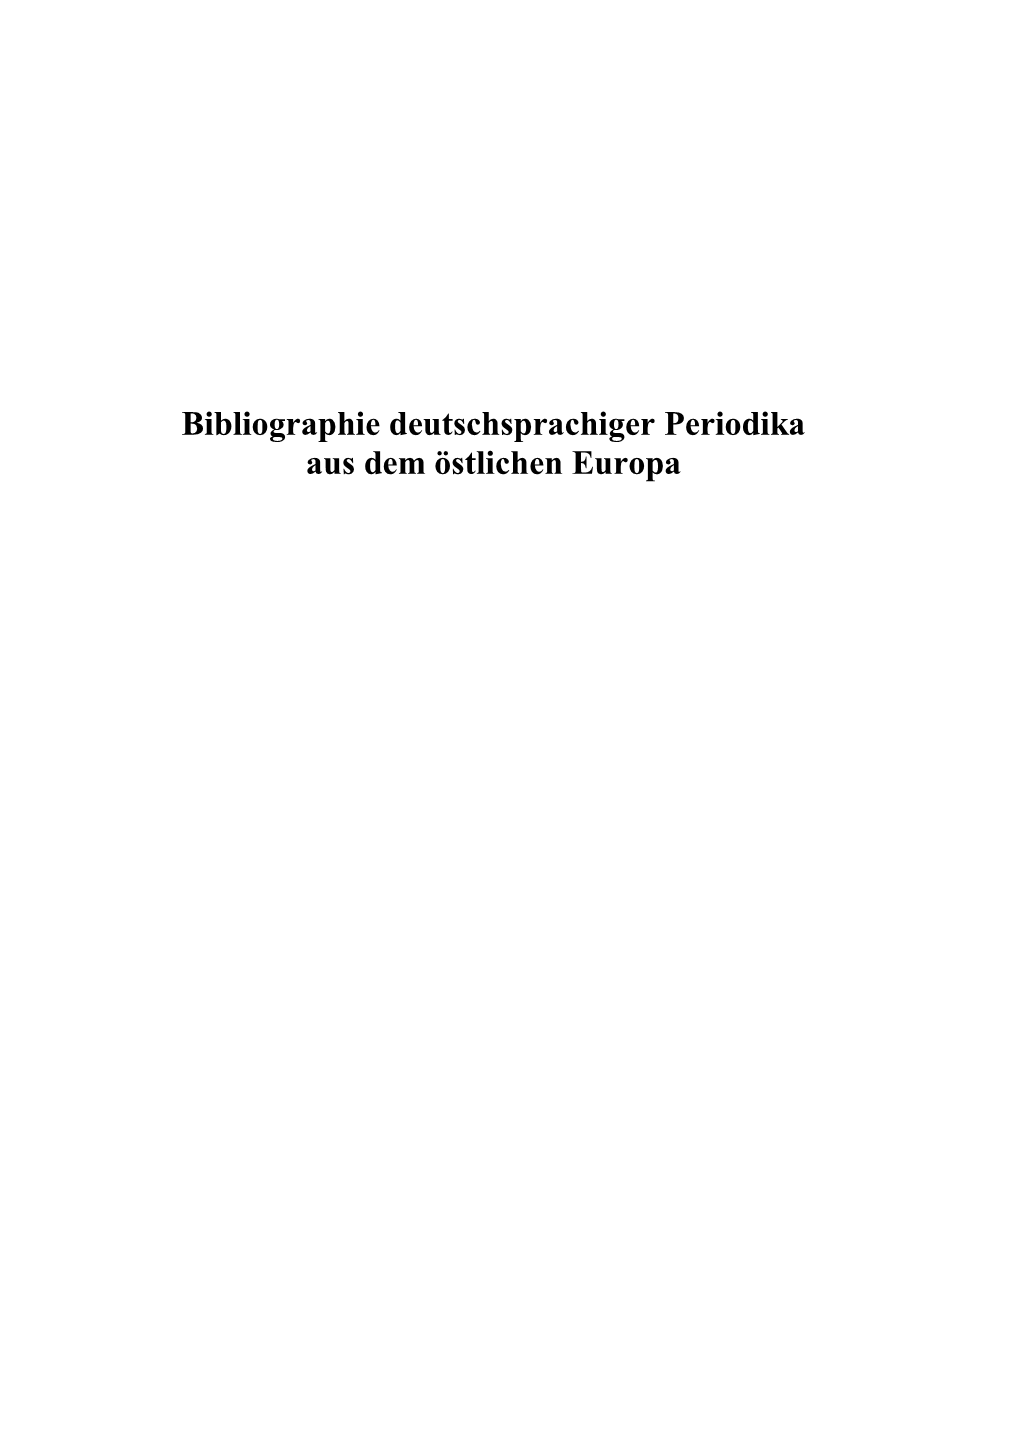 Bestandsbibliographie Zeitungen Und Zeitschriften 29-11-2013 Endfassung